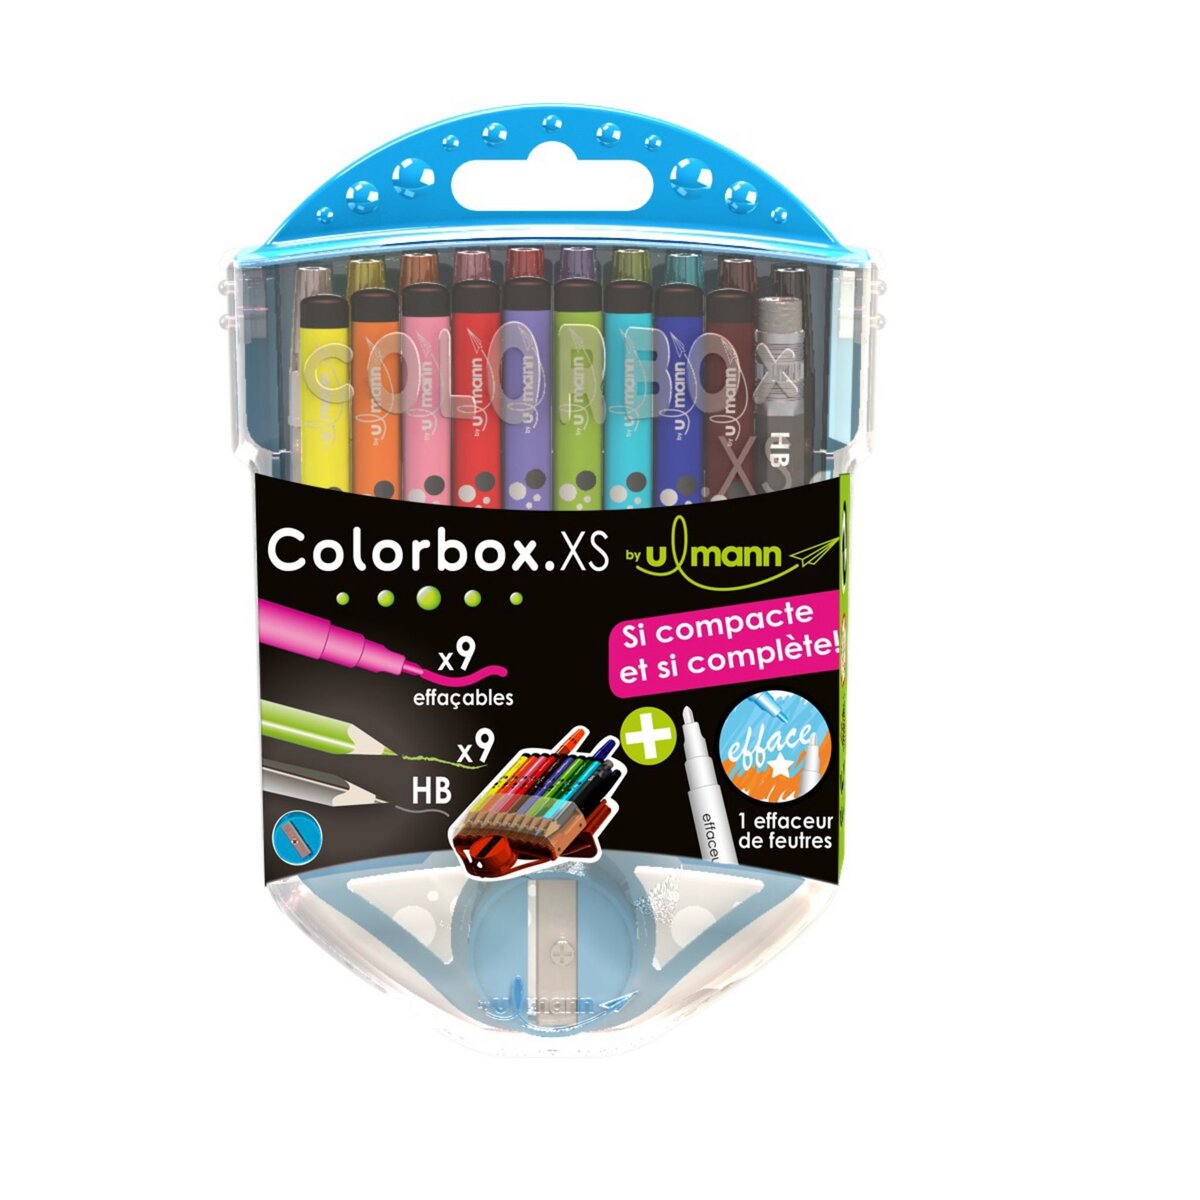 ULMANN  Coffret de coloriage 9 feutres lavables + 9 crayons de couleurs + 1 crayon graphite HB + 1 effaceur de feutres + 1 taille crayon Colorbox XS bleu